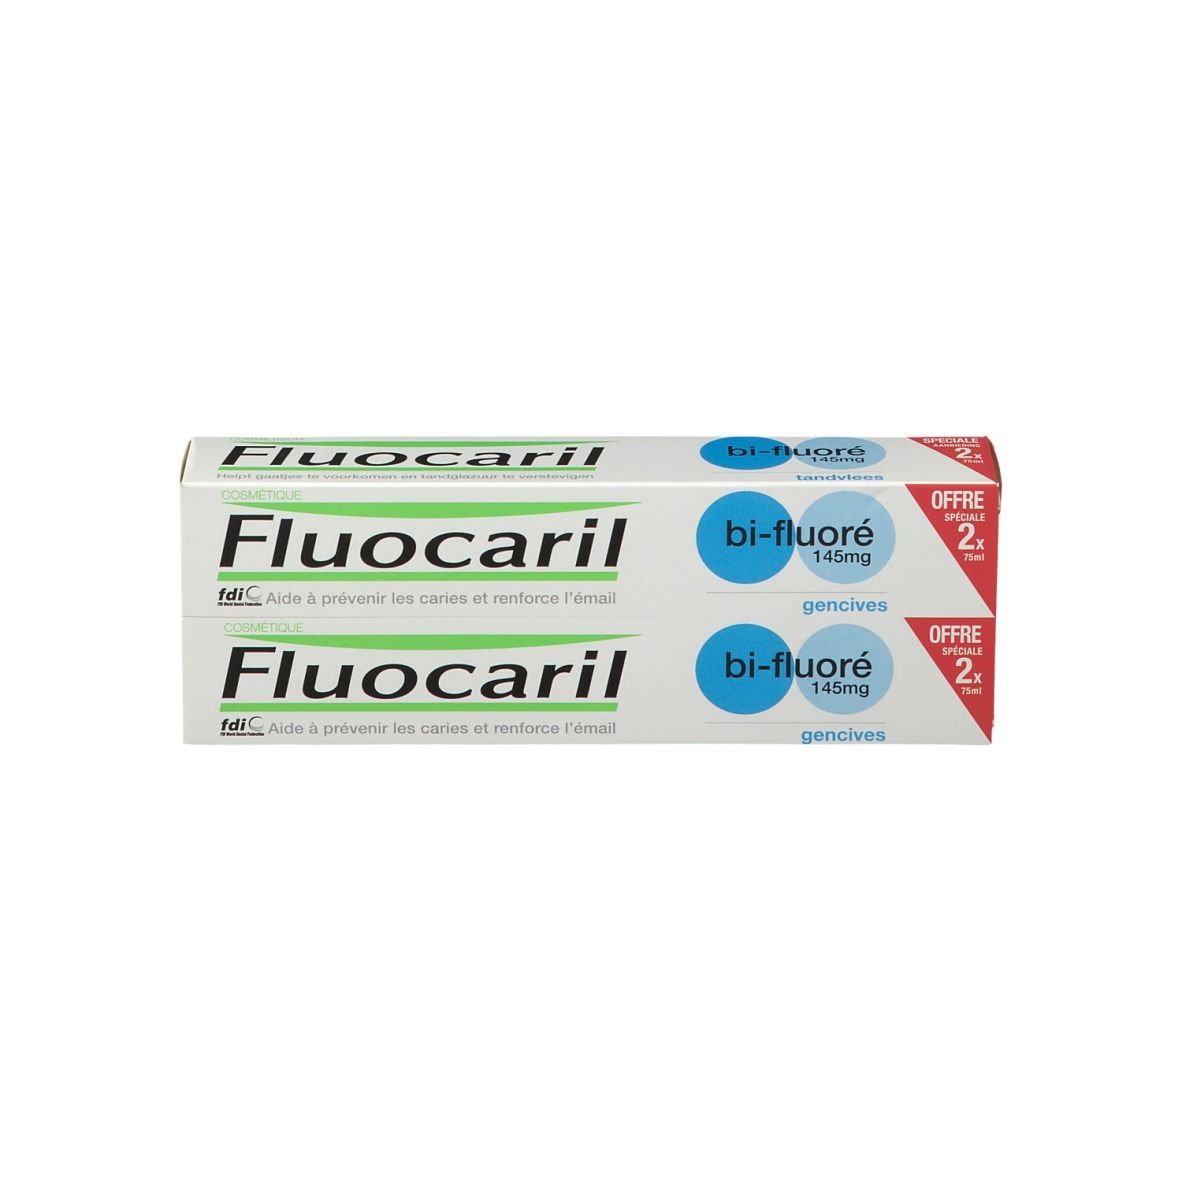 Fluocaril bi-fluoré 145 mg Zahnfleischschutz Zahnpasta